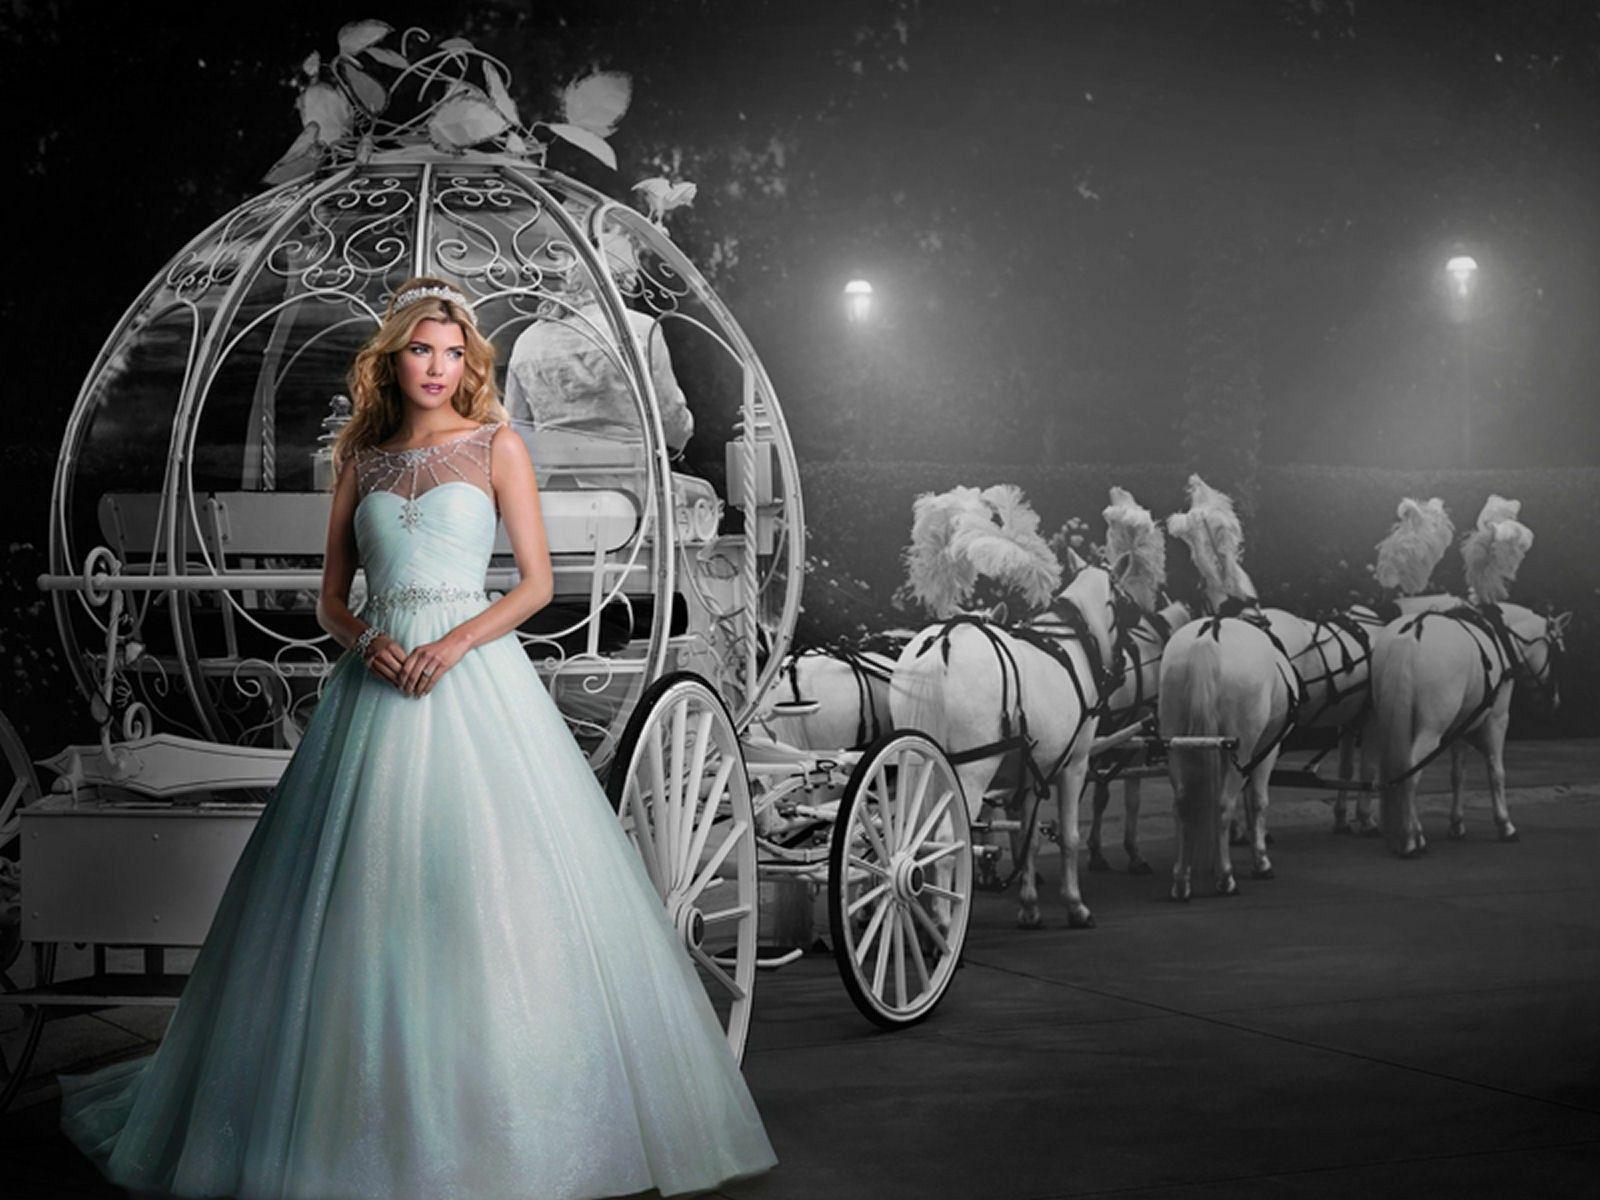 Free 3D Cinderella HD Wallpaper Photo Download